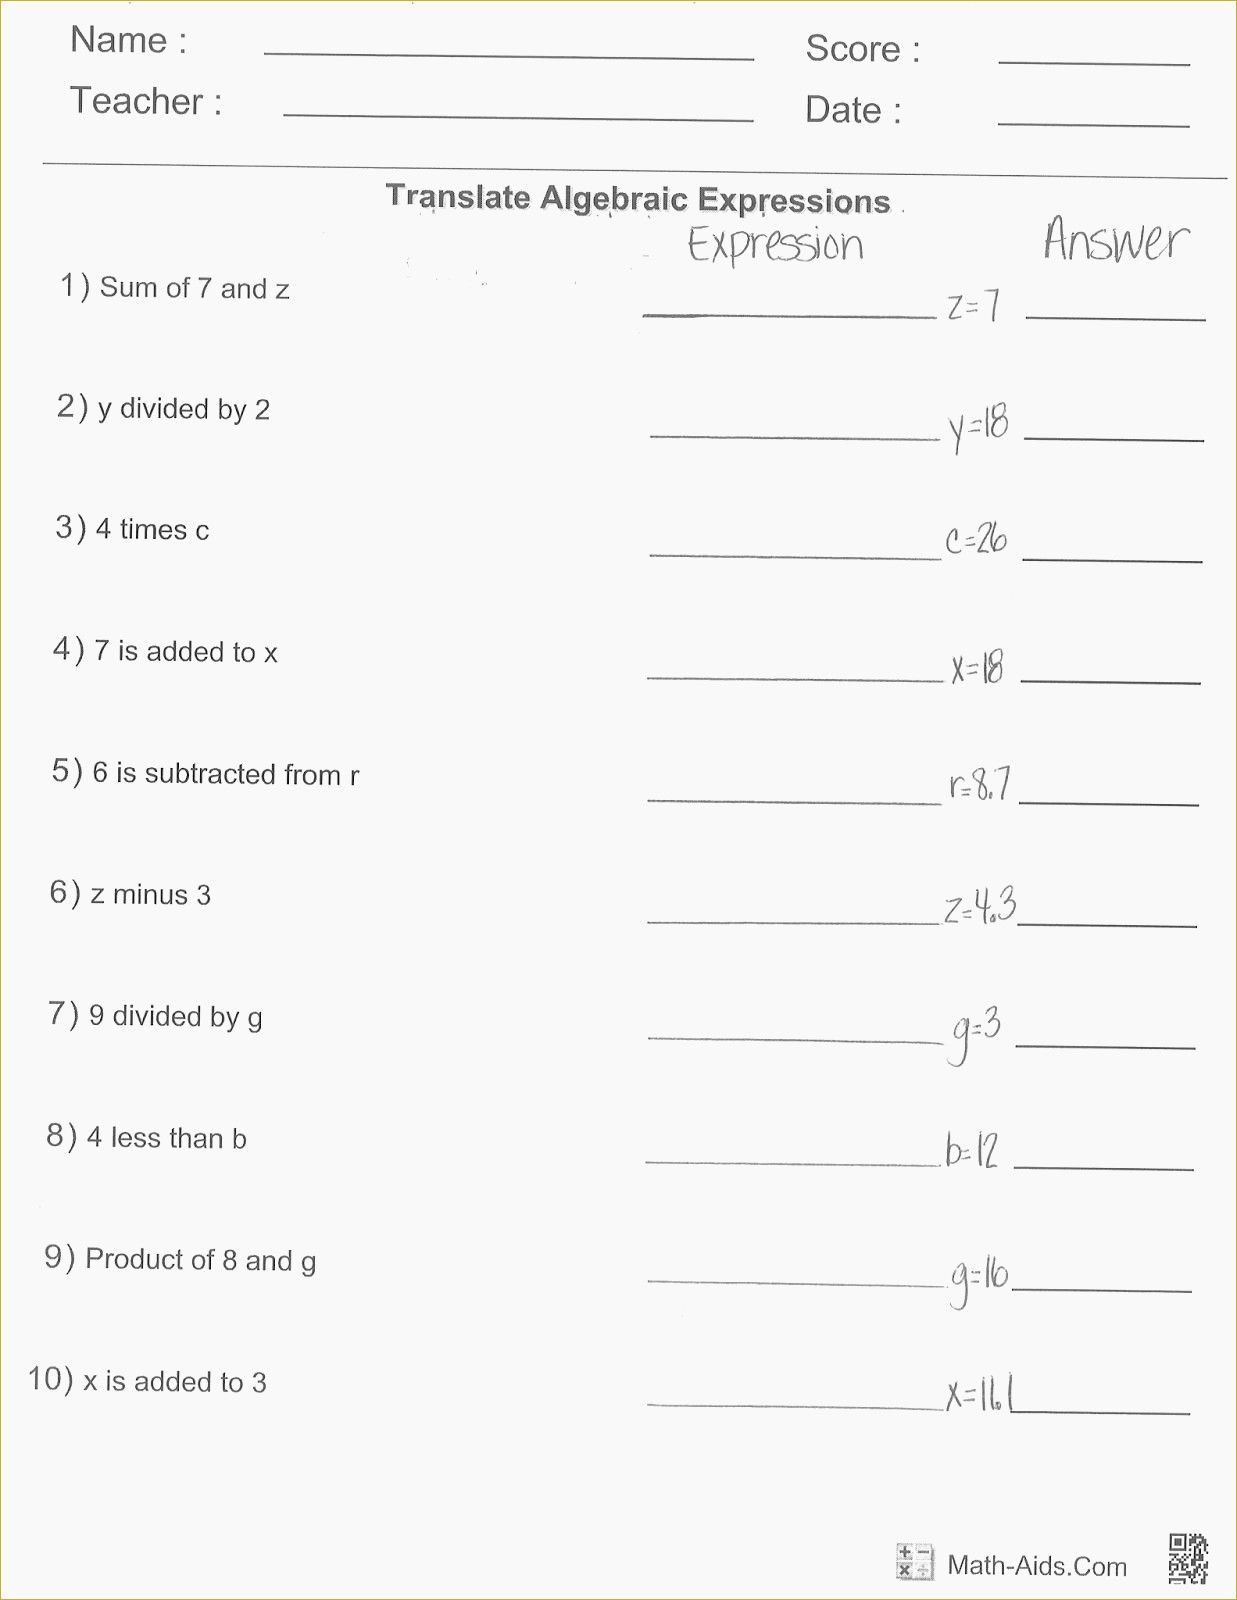 Evaluating Algebraic Expressions Worksheet Writing and Evaluating Expressions Worksheet Pdf